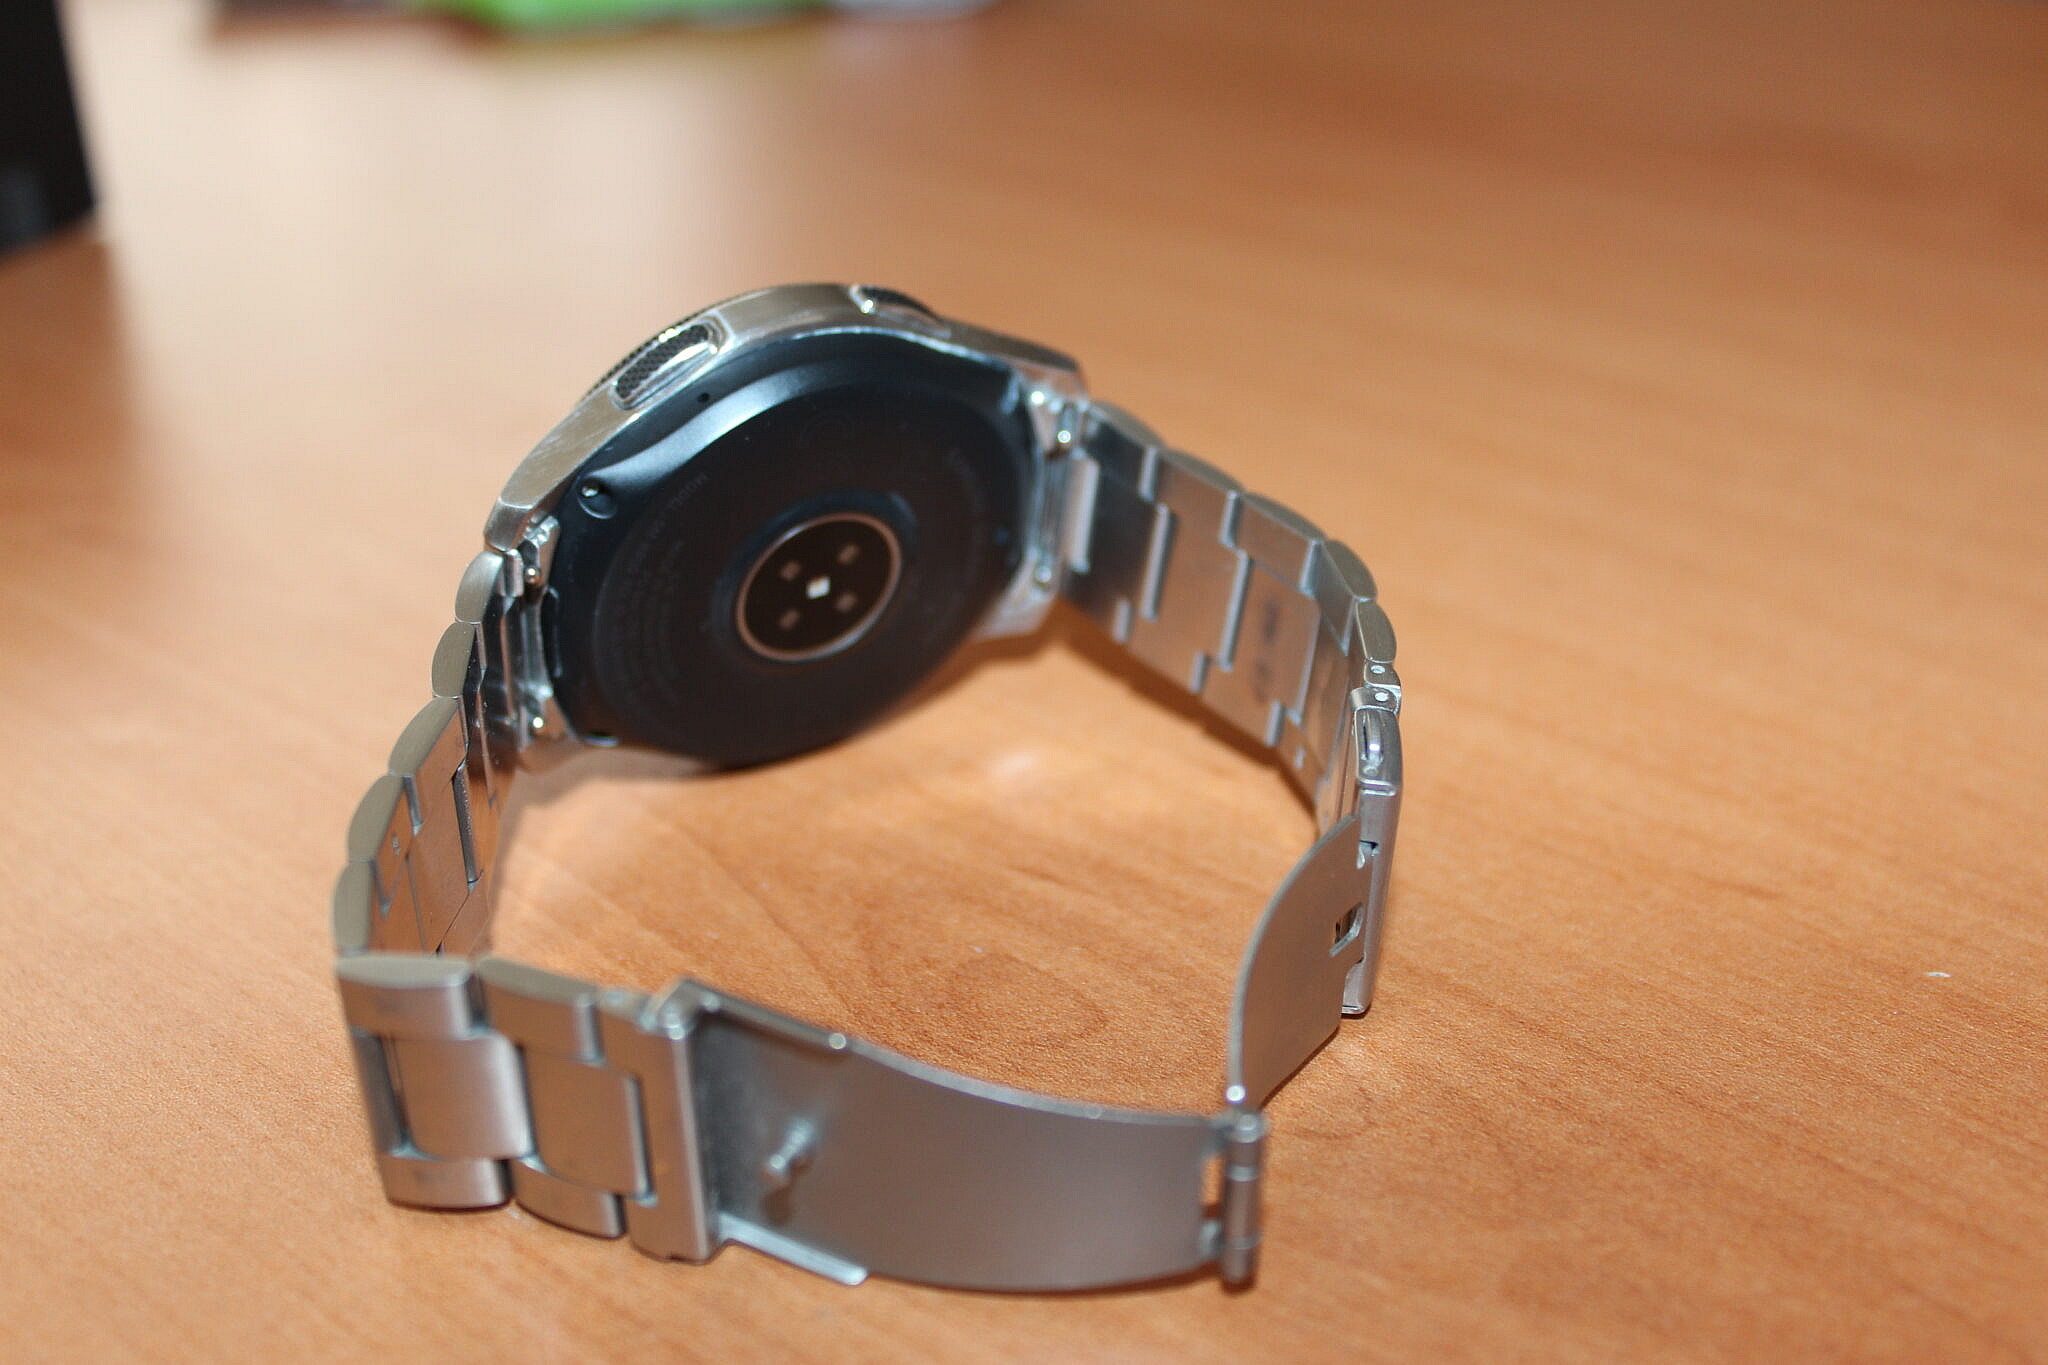 FIRSAT FİYATI // Satılık Galaxy Watch 46mm- Ekstra çelik kordonlu- SATILDI